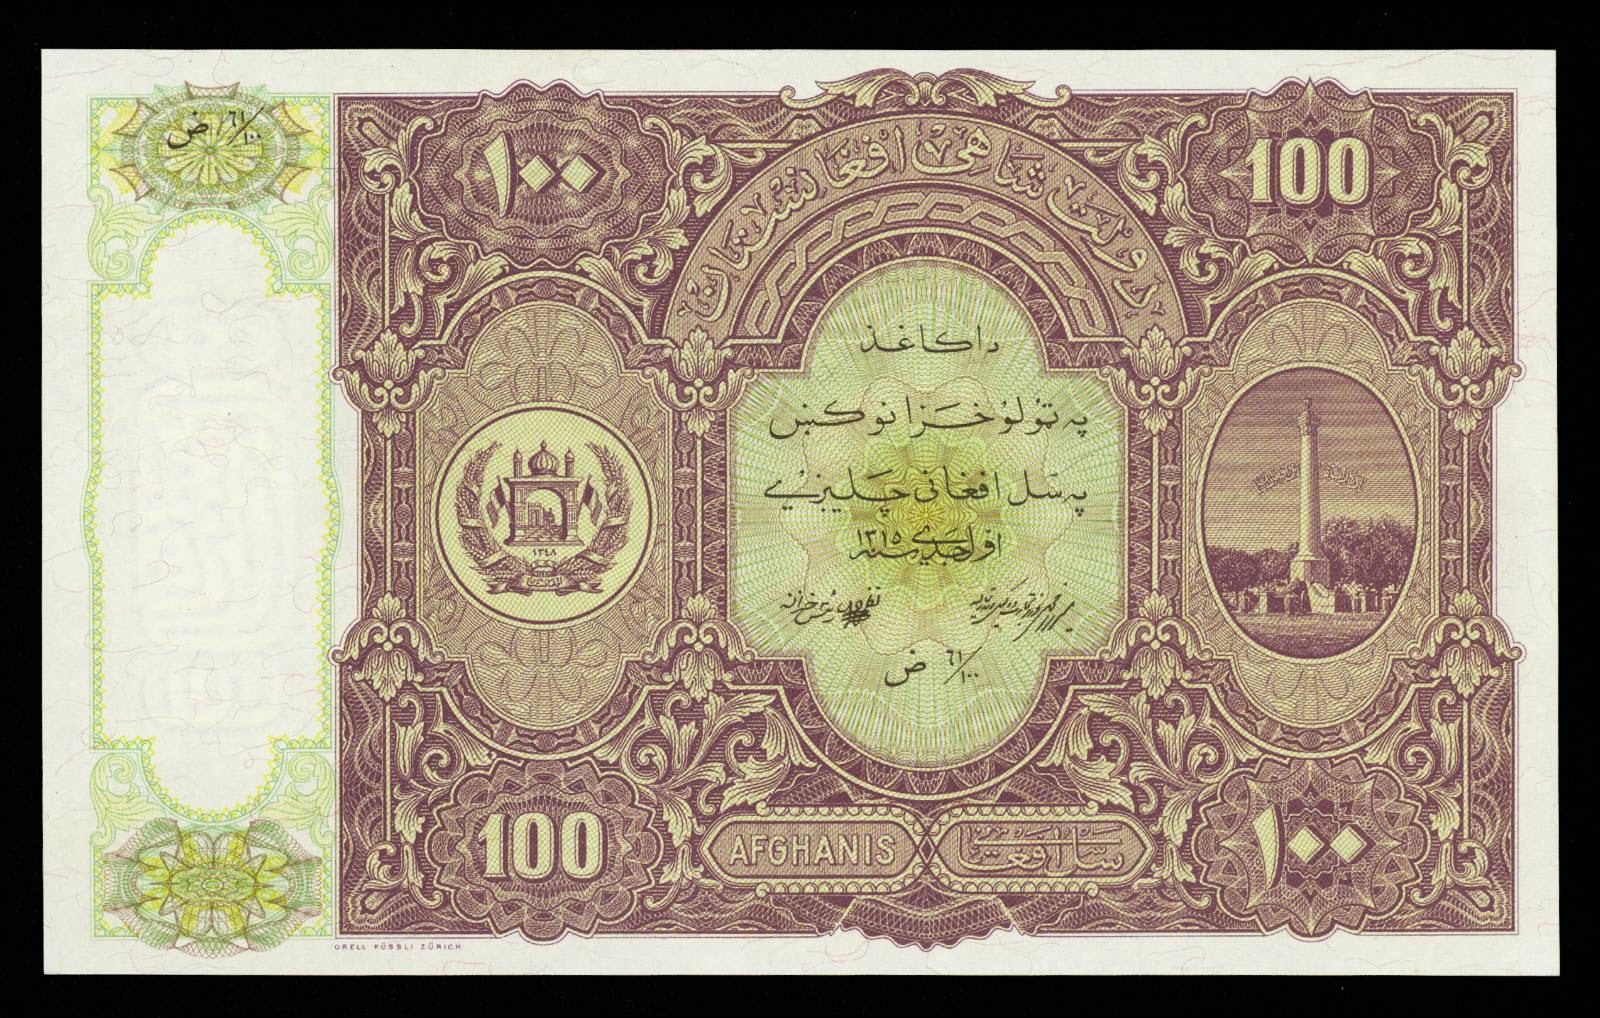 Afghanistan Currency 100 Afghanis banknote 1936